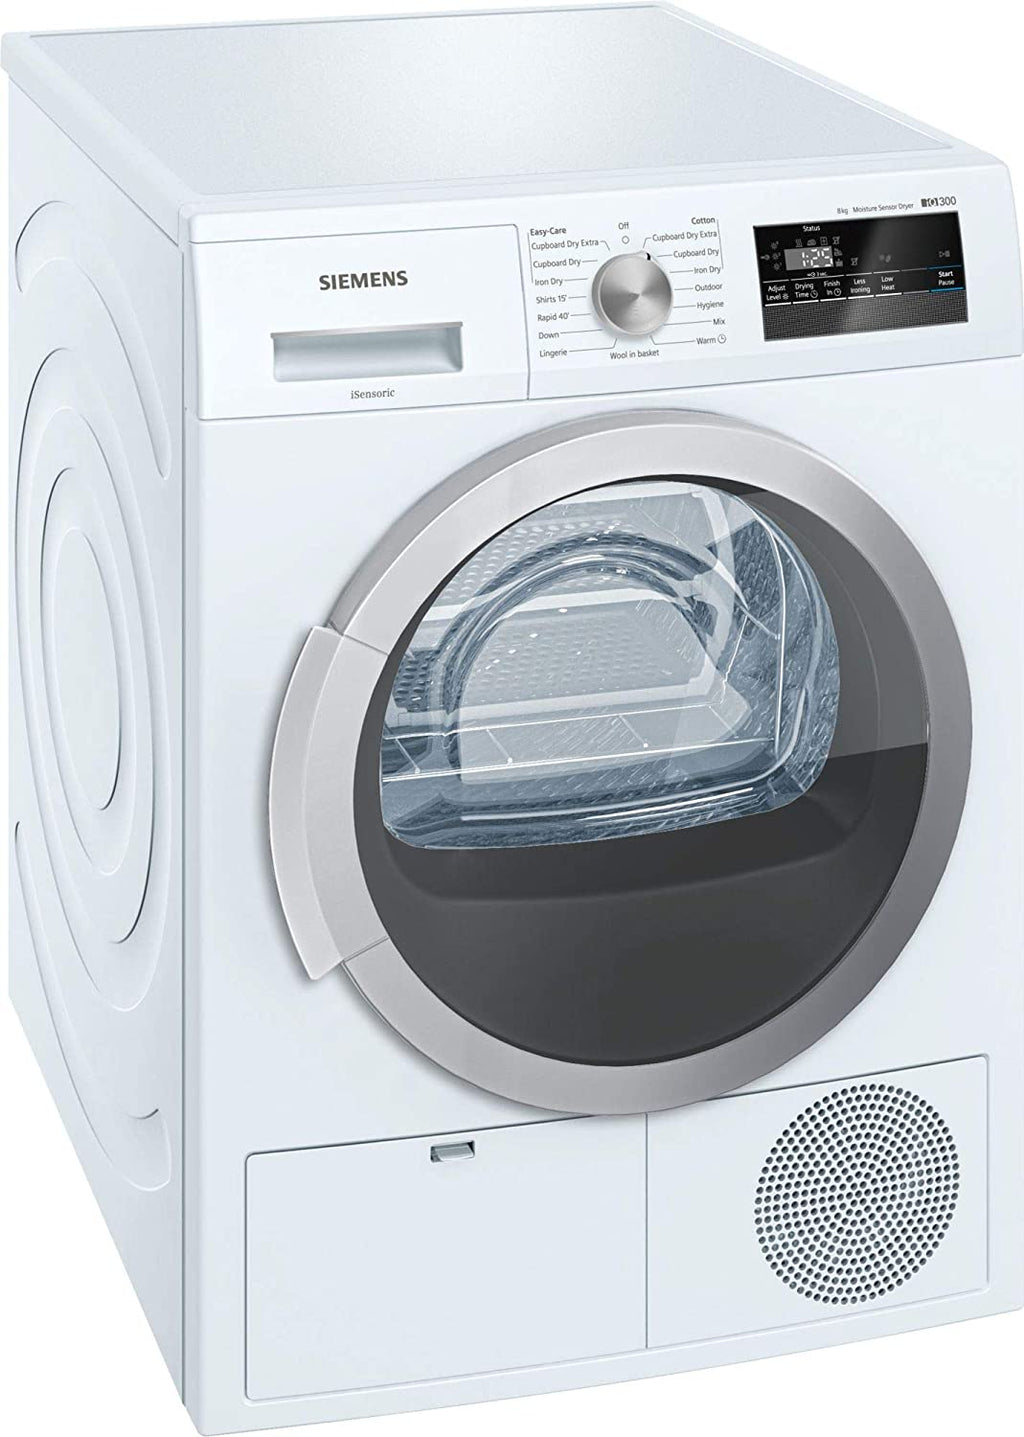 Siemens Free-standing Dryer 8 Kg (Wt44b202in)